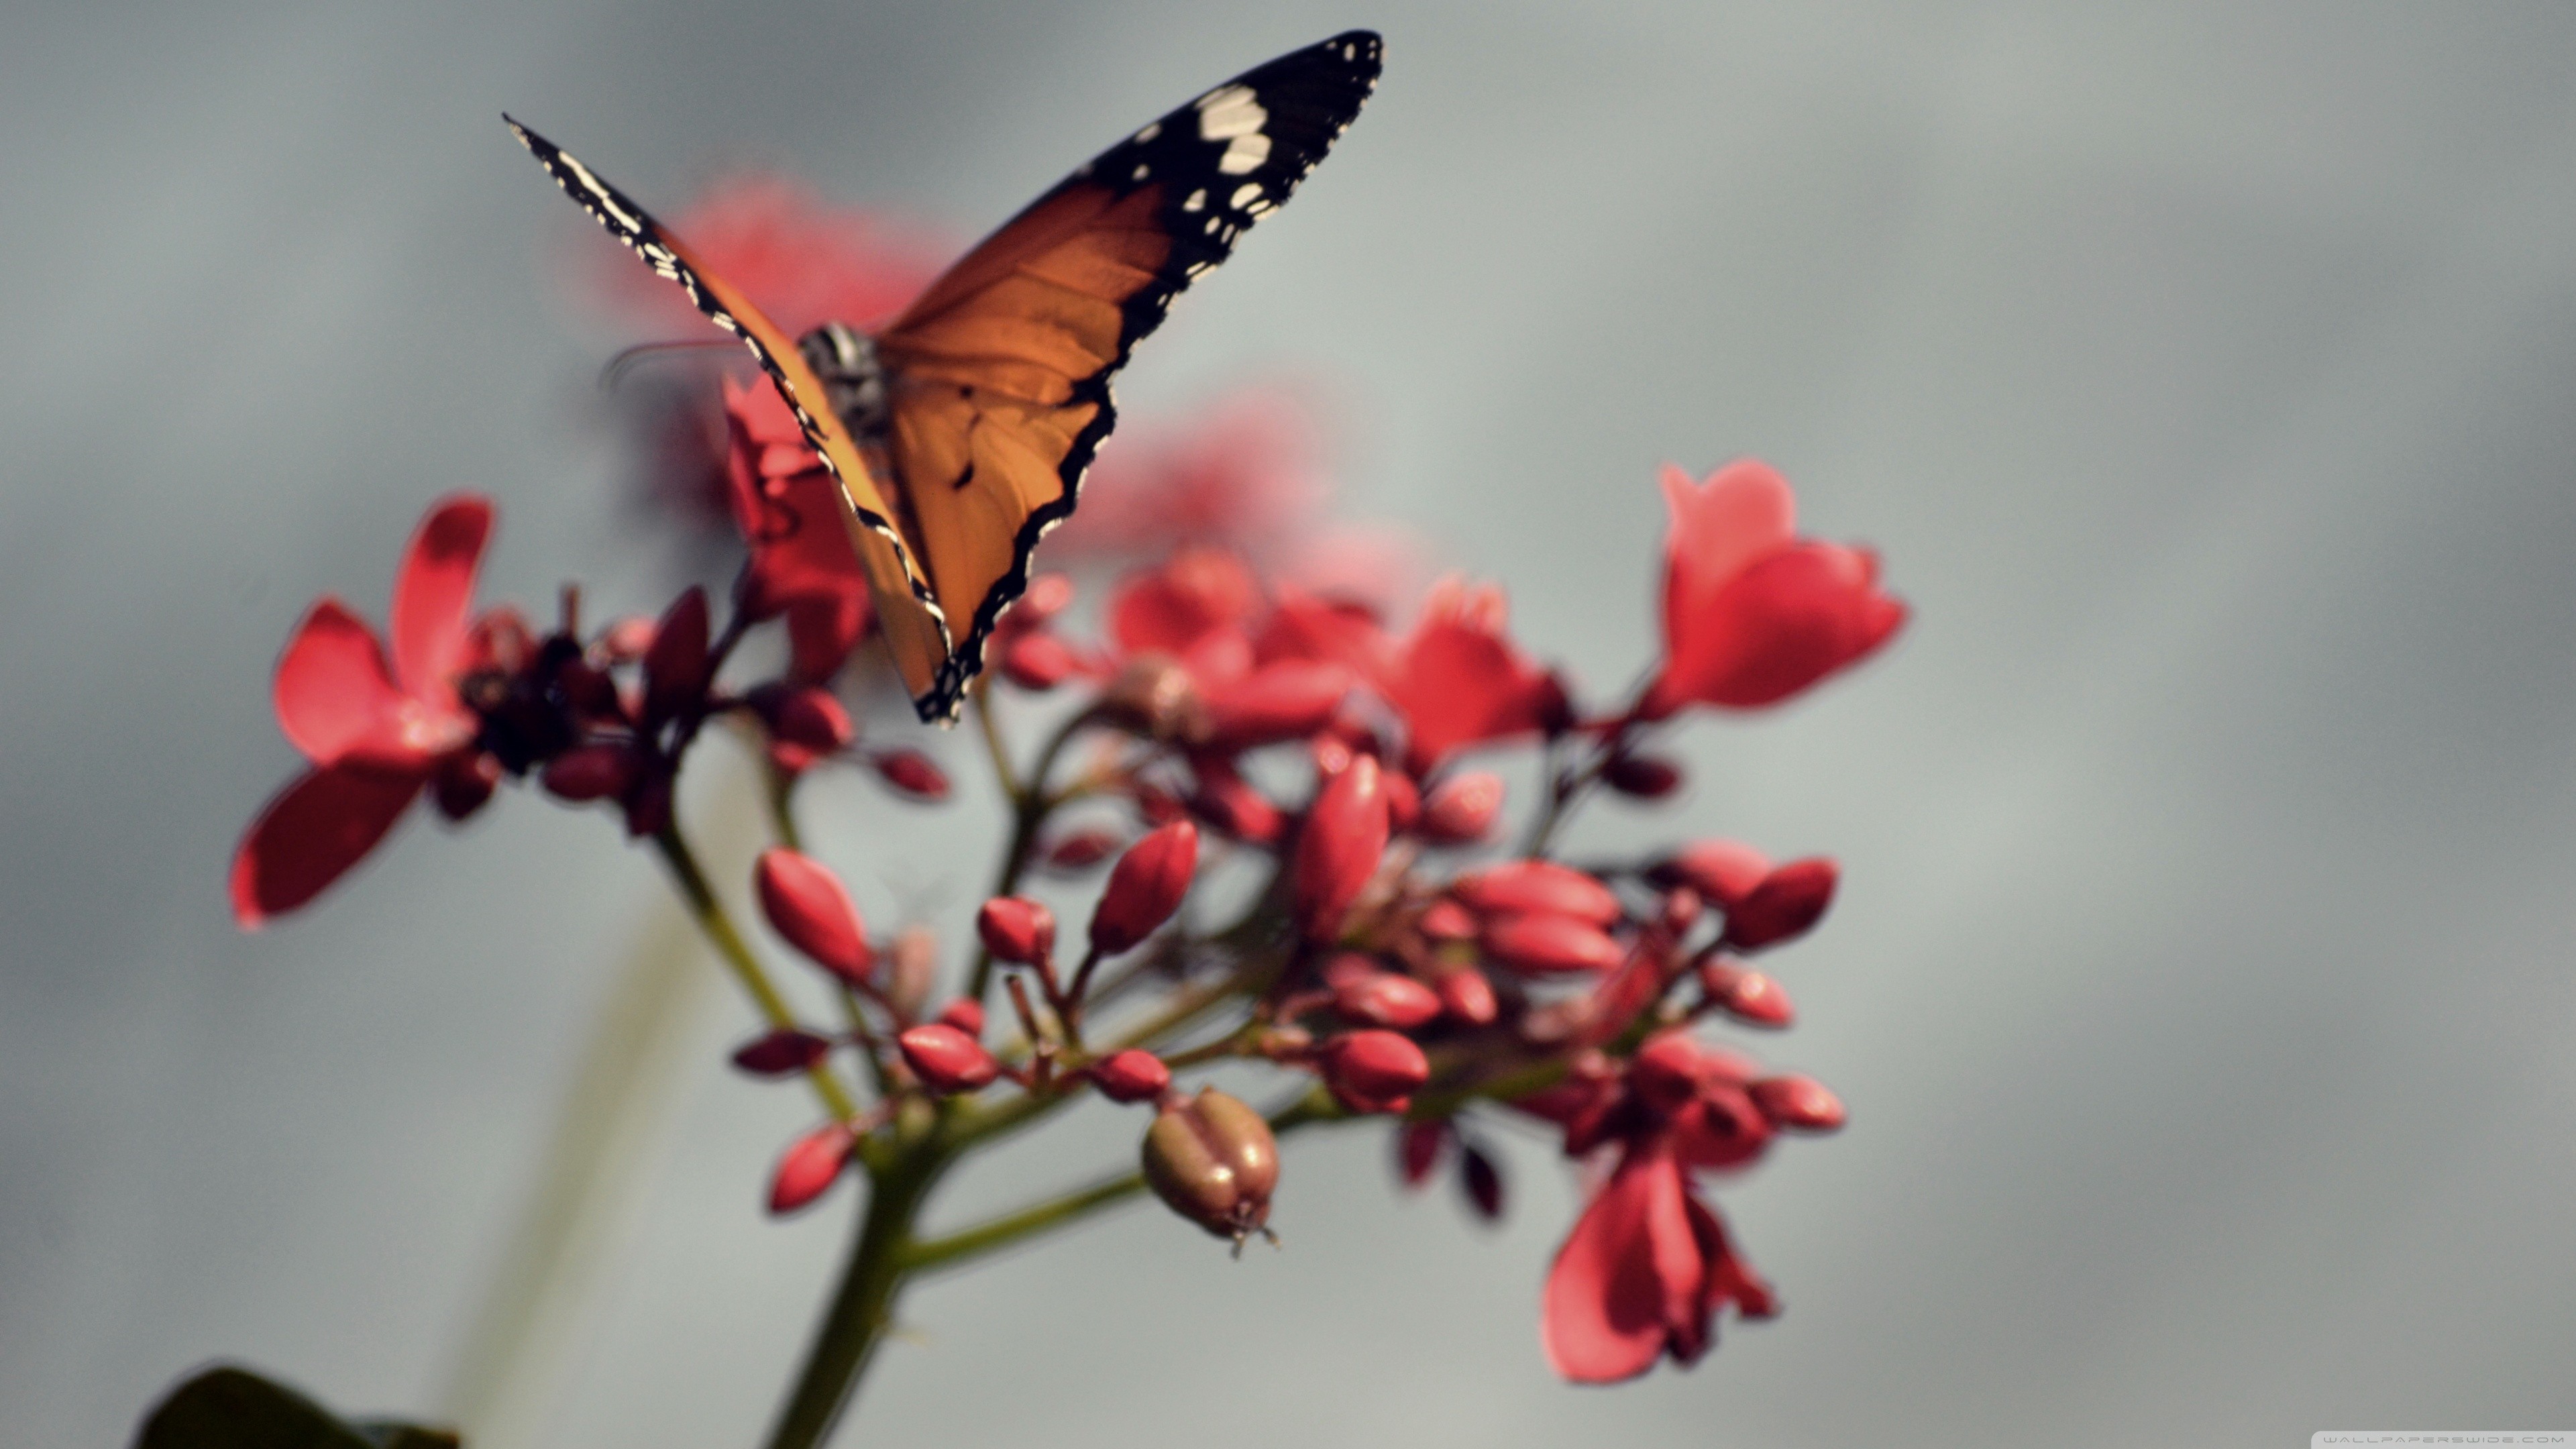 Красивые обои на андроид вертикально. Бабочка. Бабочки в природе. Бабочка на цветке. Красивые обои на телефон.